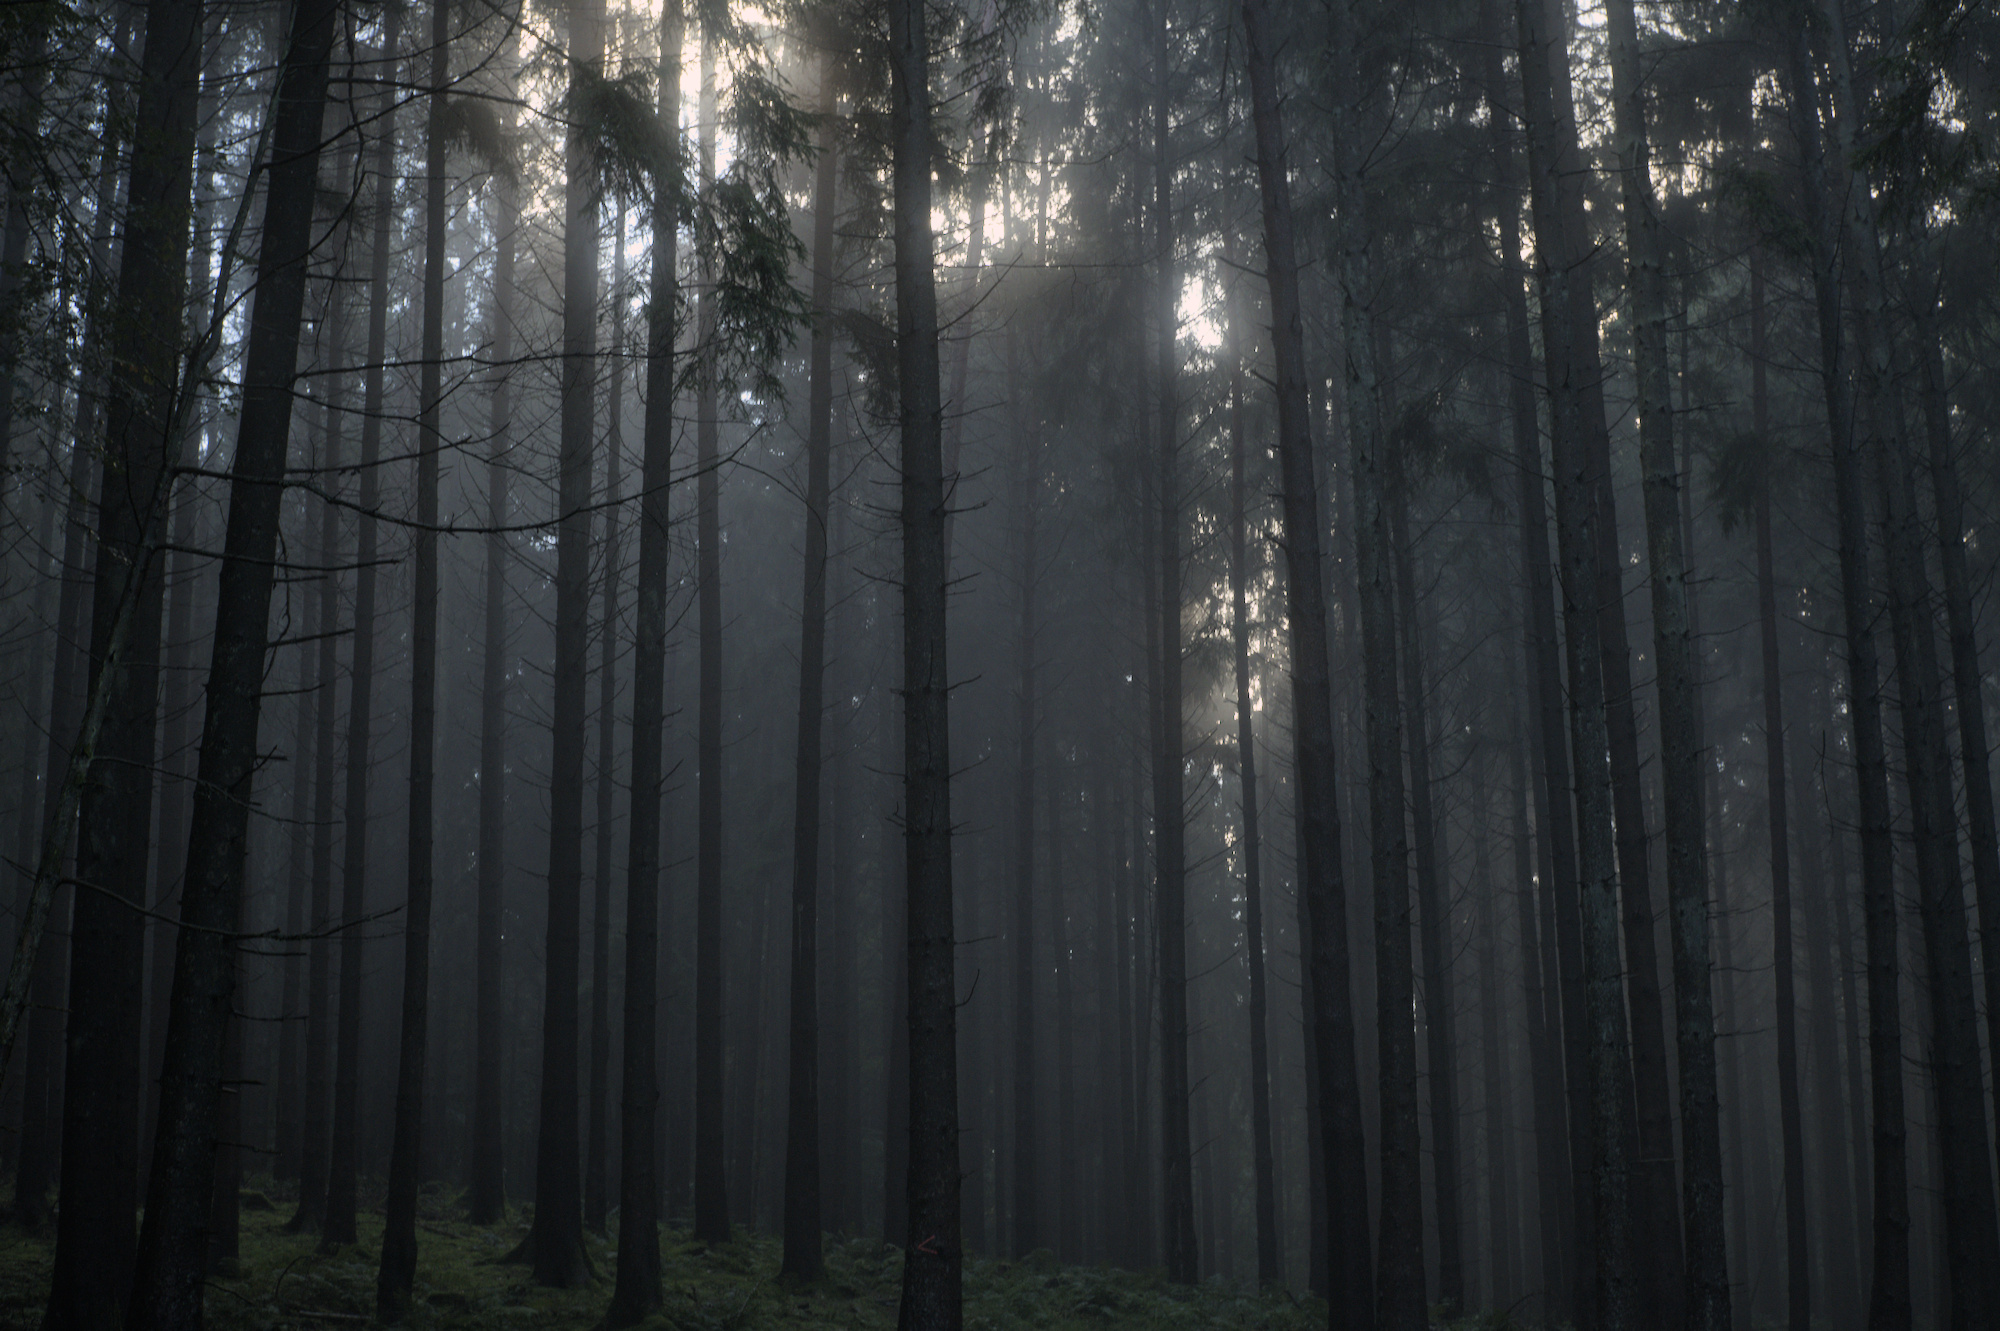 Szenerie im Wald mit einigen Nadel- und Laubbäumen. Nebel zieht auf